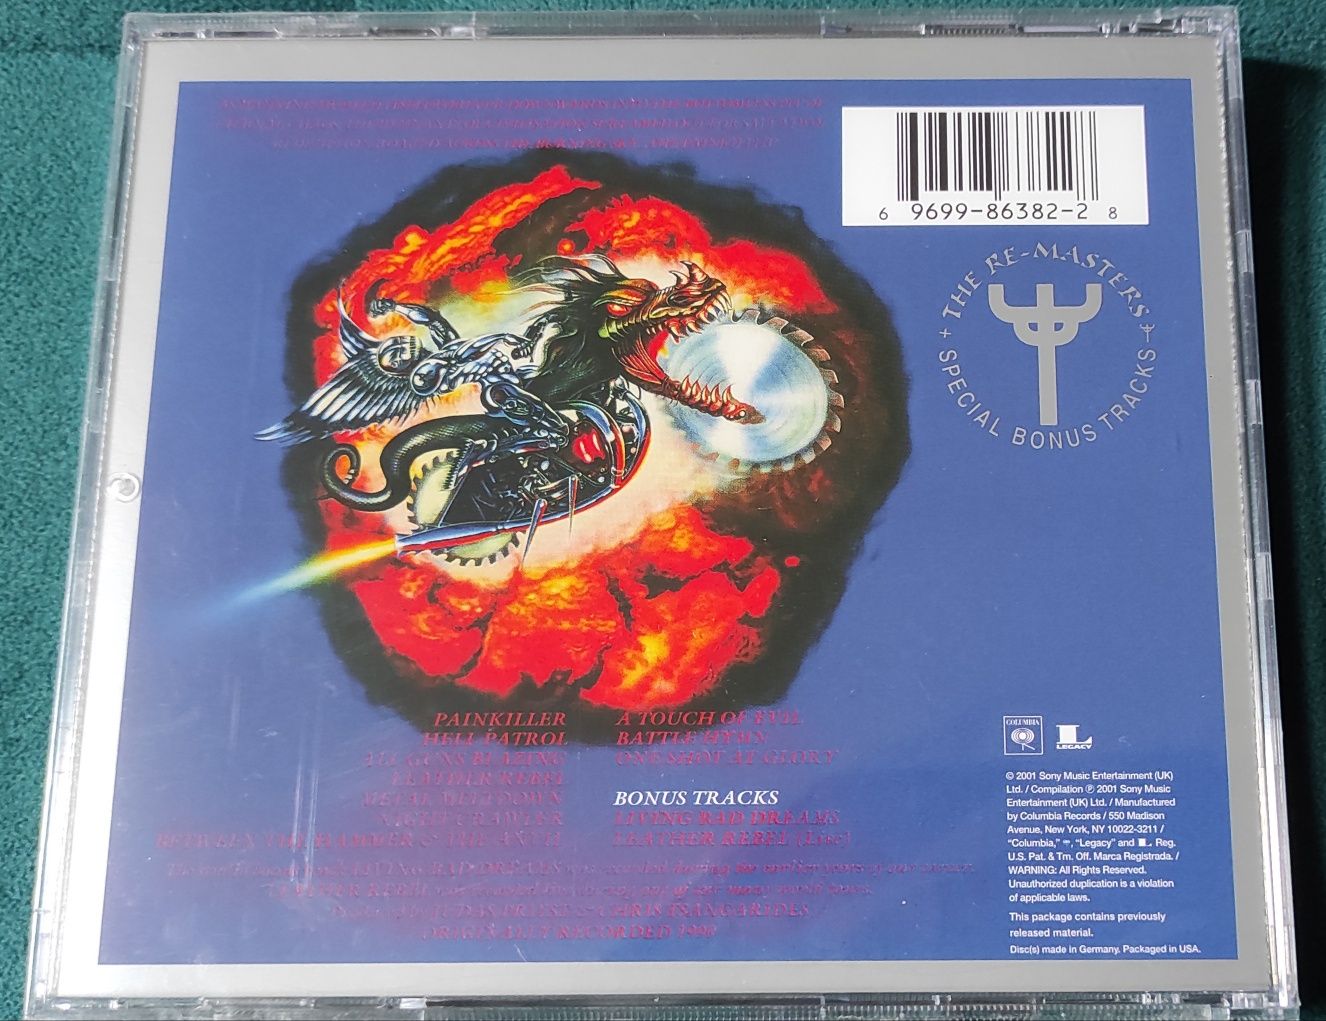 Judas Priest - Painkiller e Defenders of The Faith - CDs novos